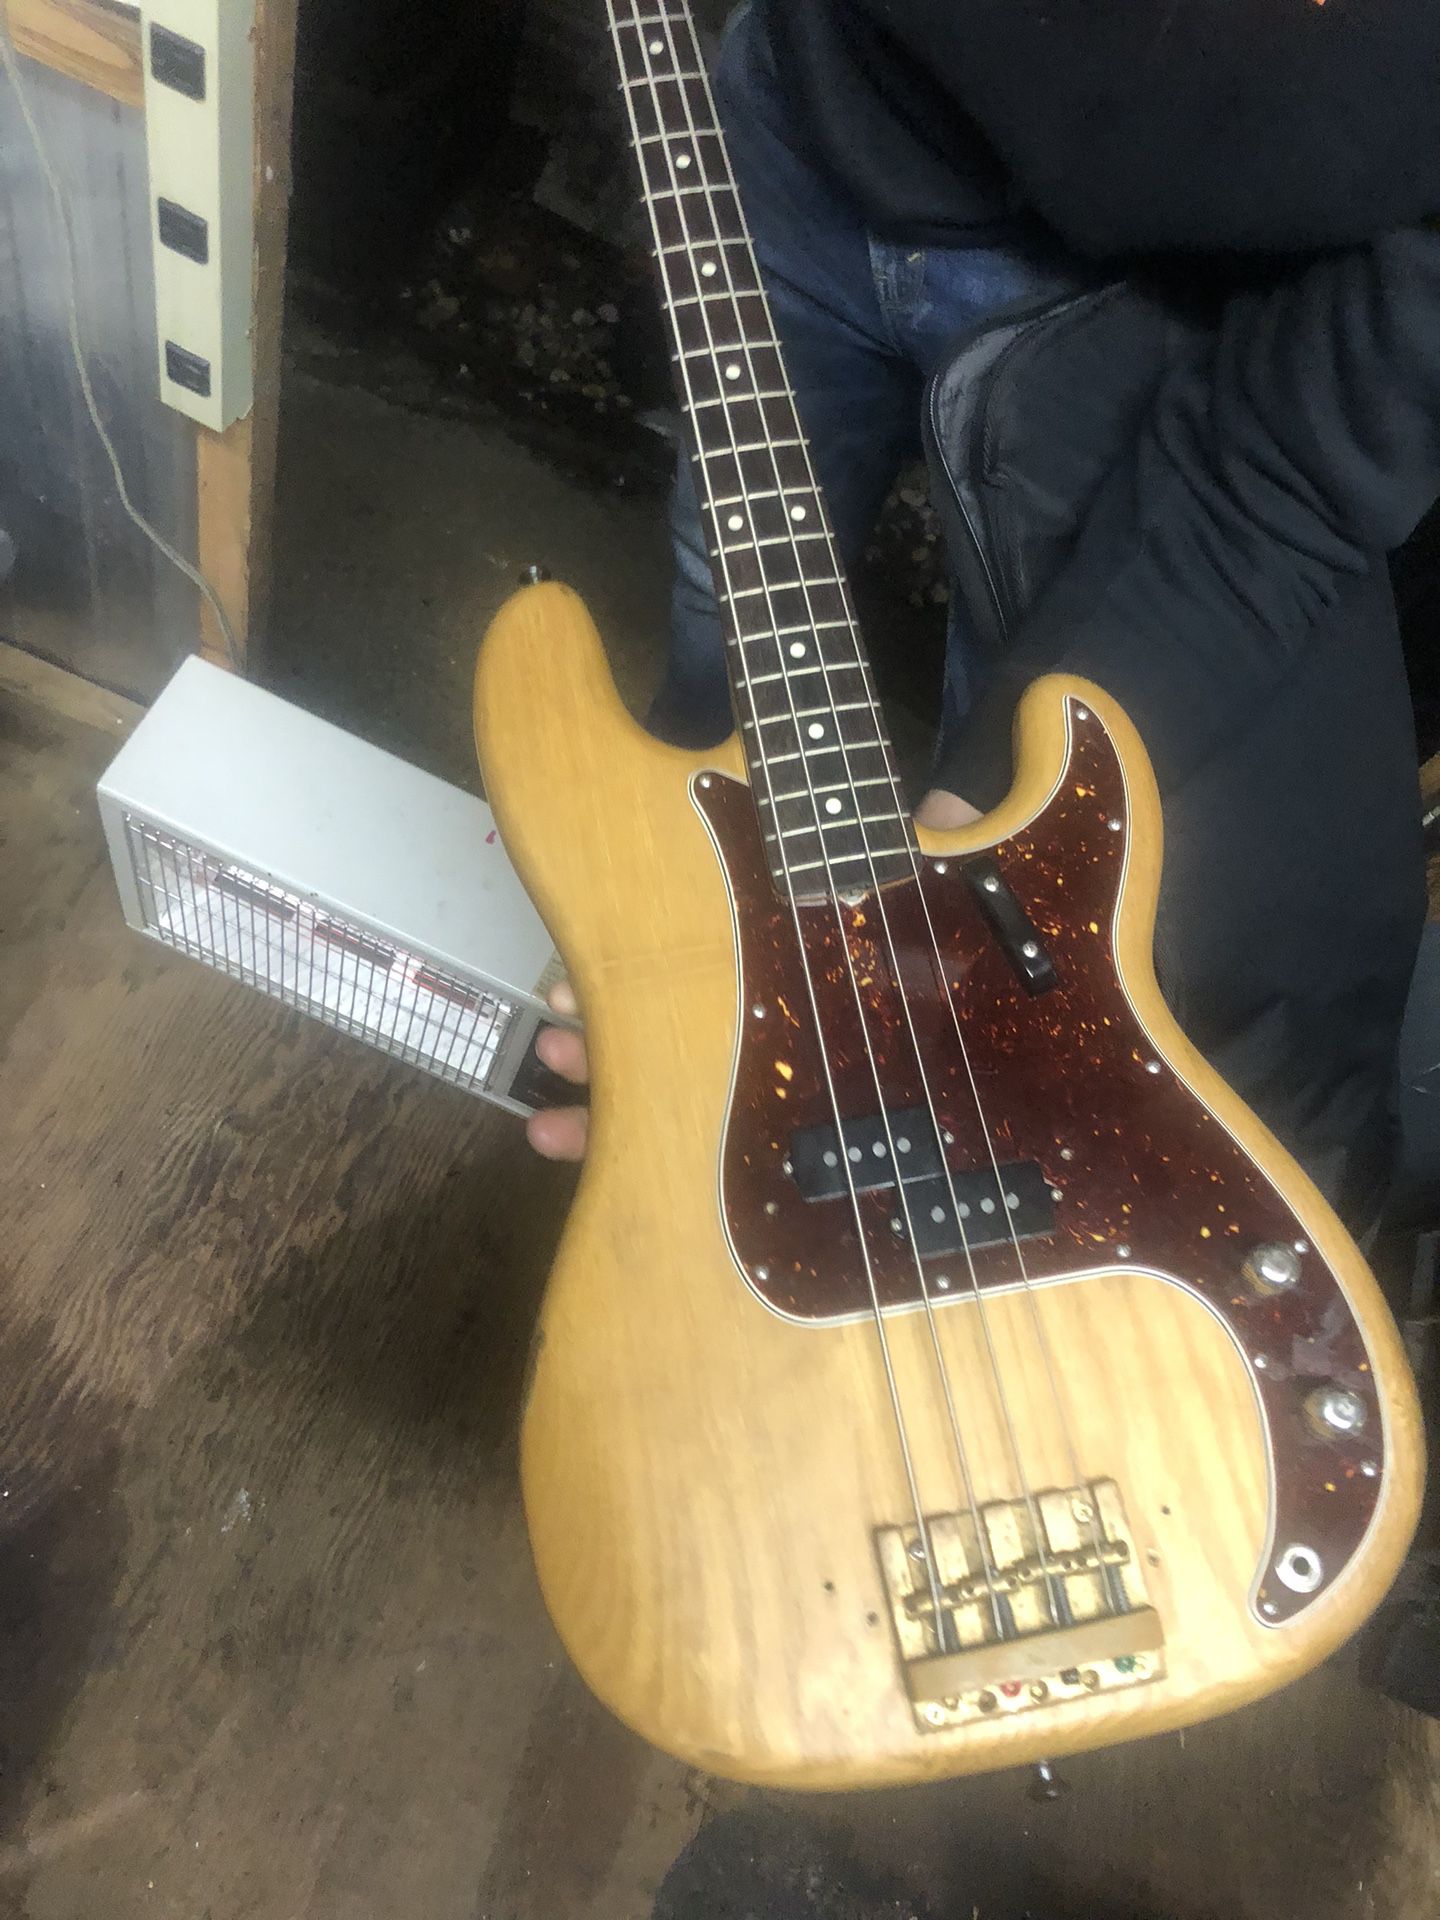 Fender Precision Bass 